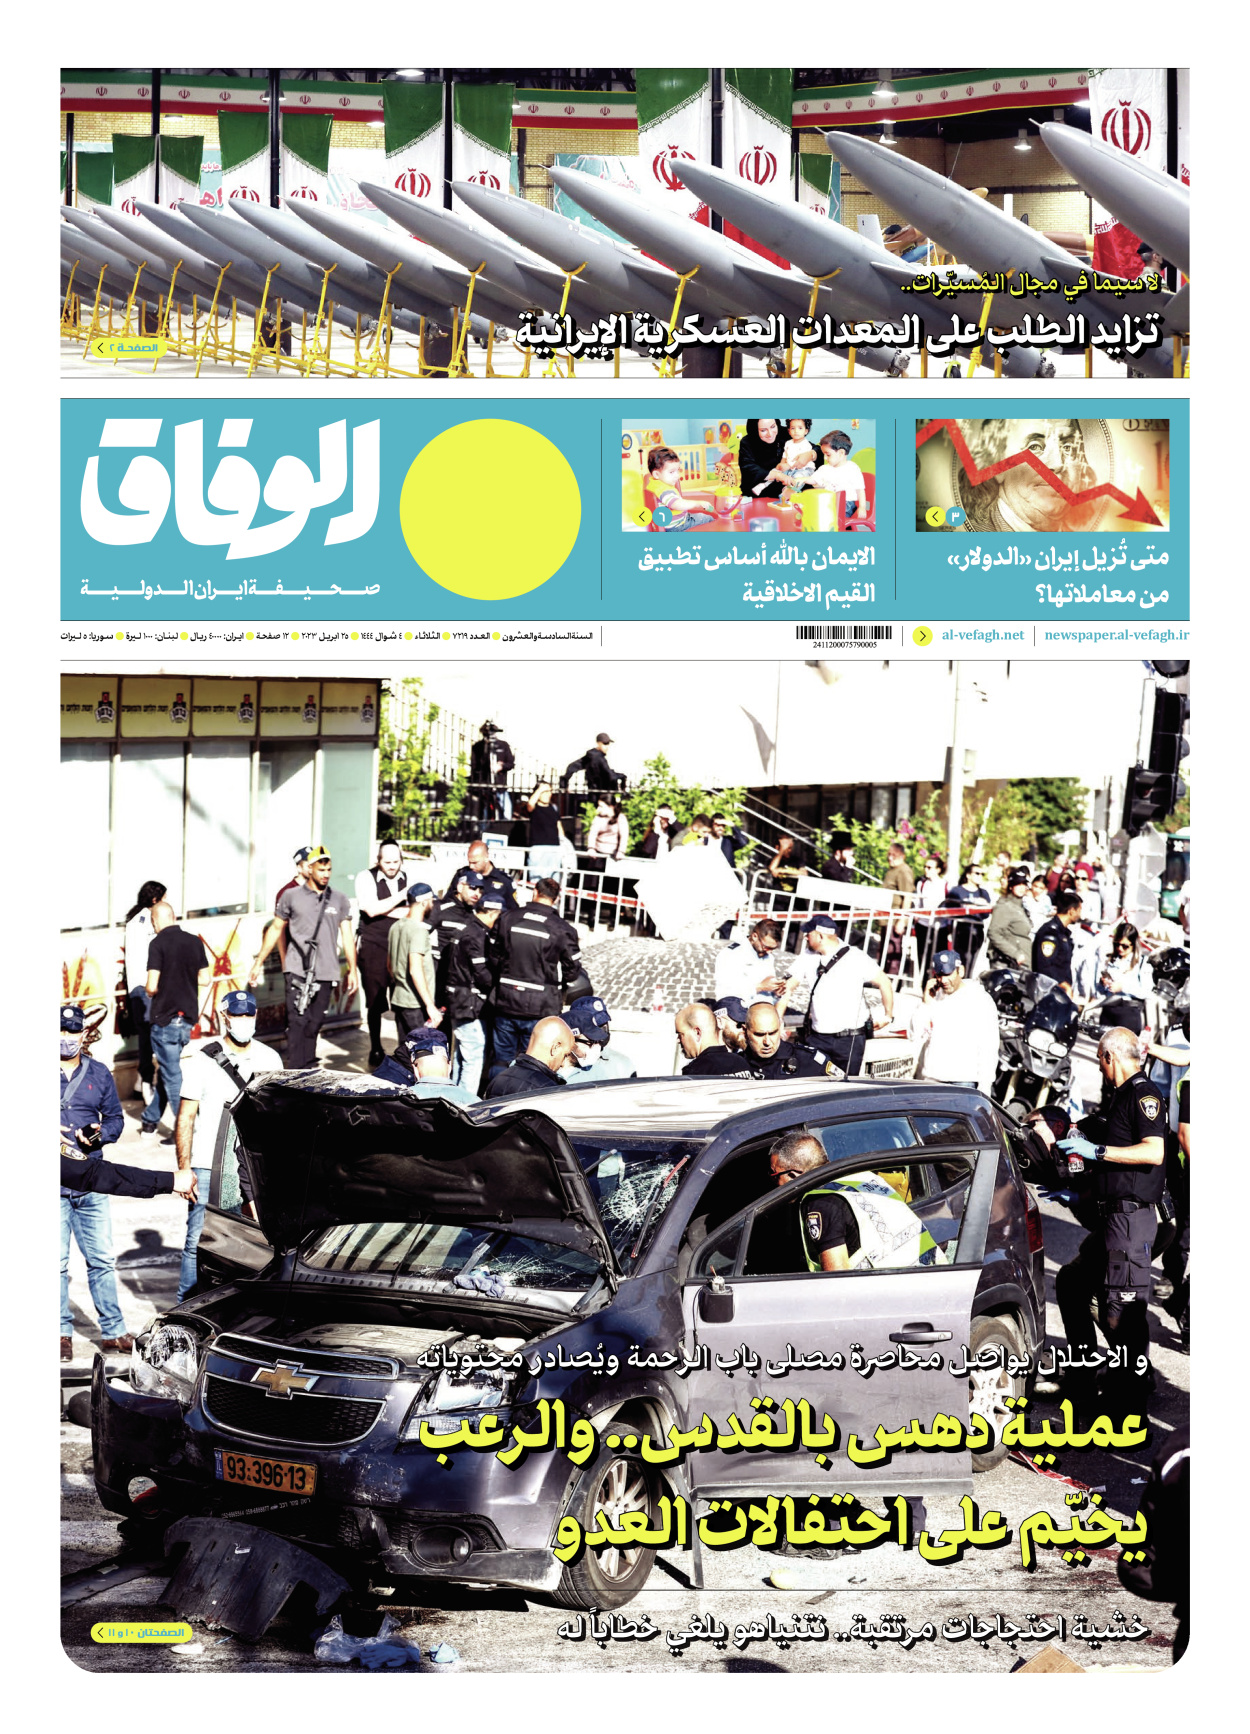 صحیفة ایران الدولیة الوفاق - العدد سبعة آلاف ومائتان وتسعة عشر - ٢٥ أبريل ٢٠٢٣